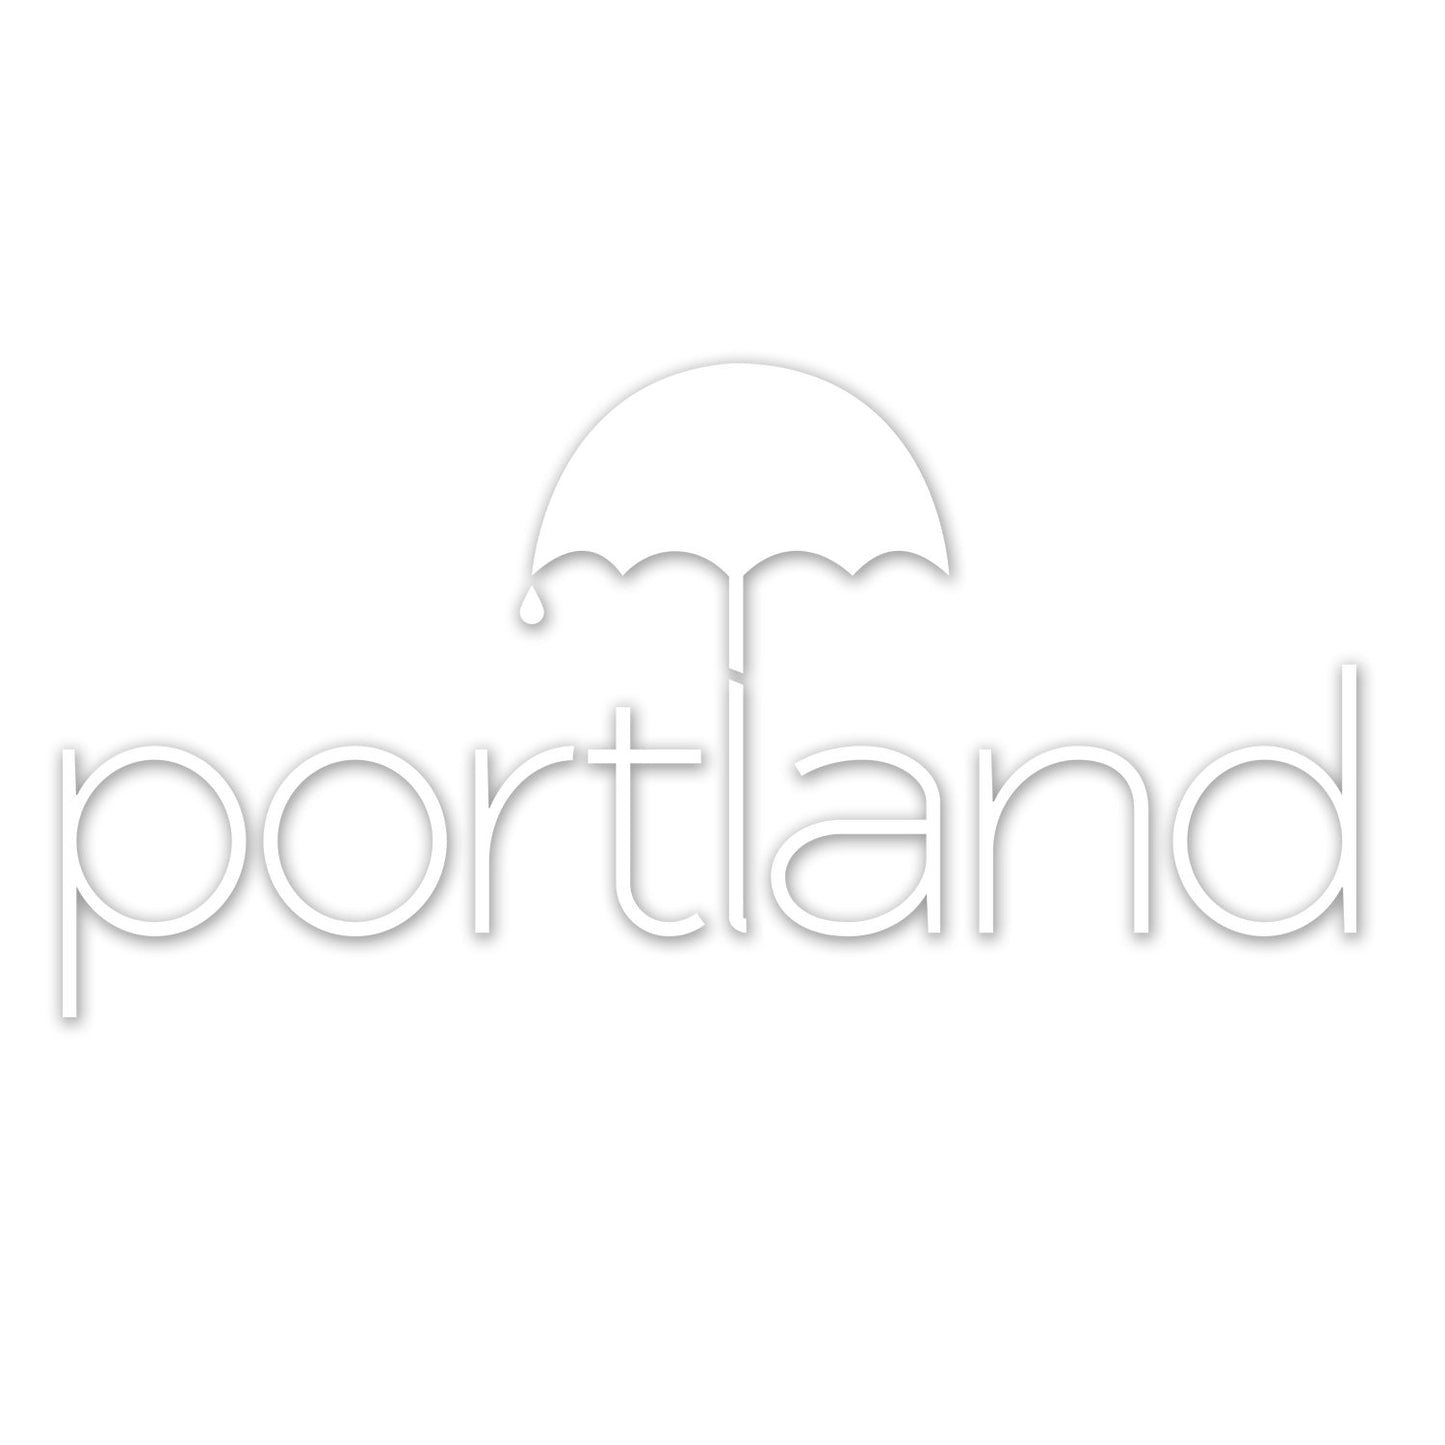 Portland Umbrella | Vinyl Decal